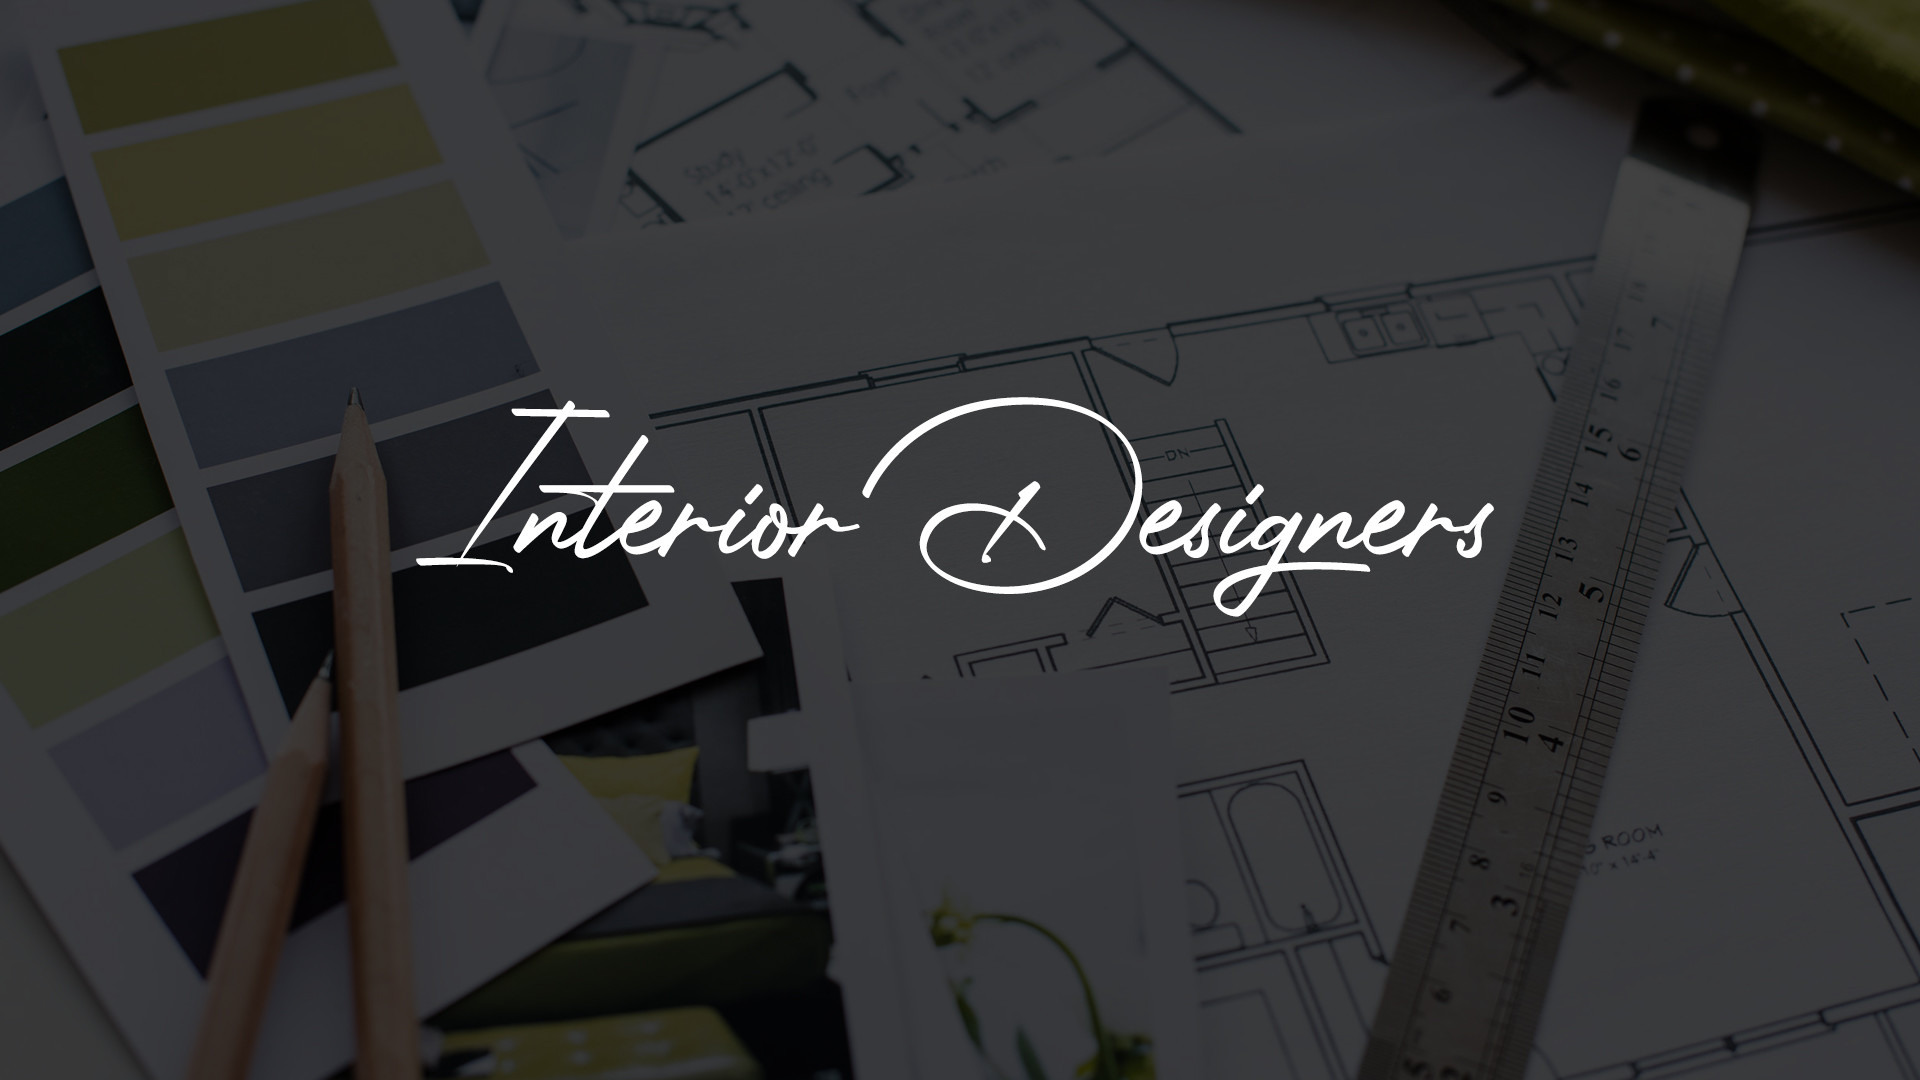 Interior Designers